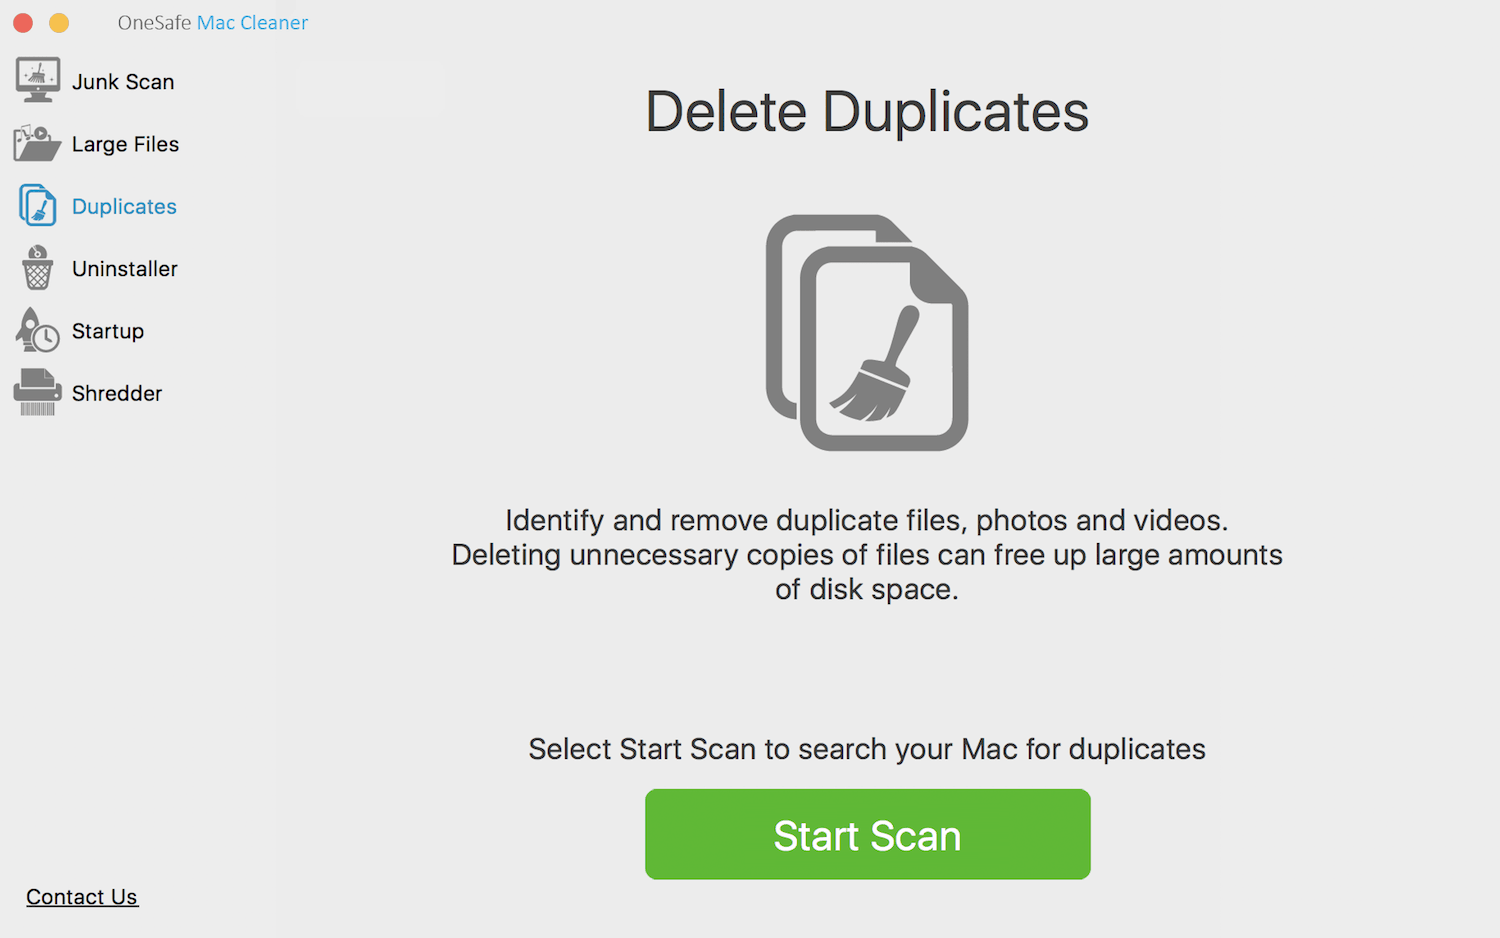 duplicate cleaner mac